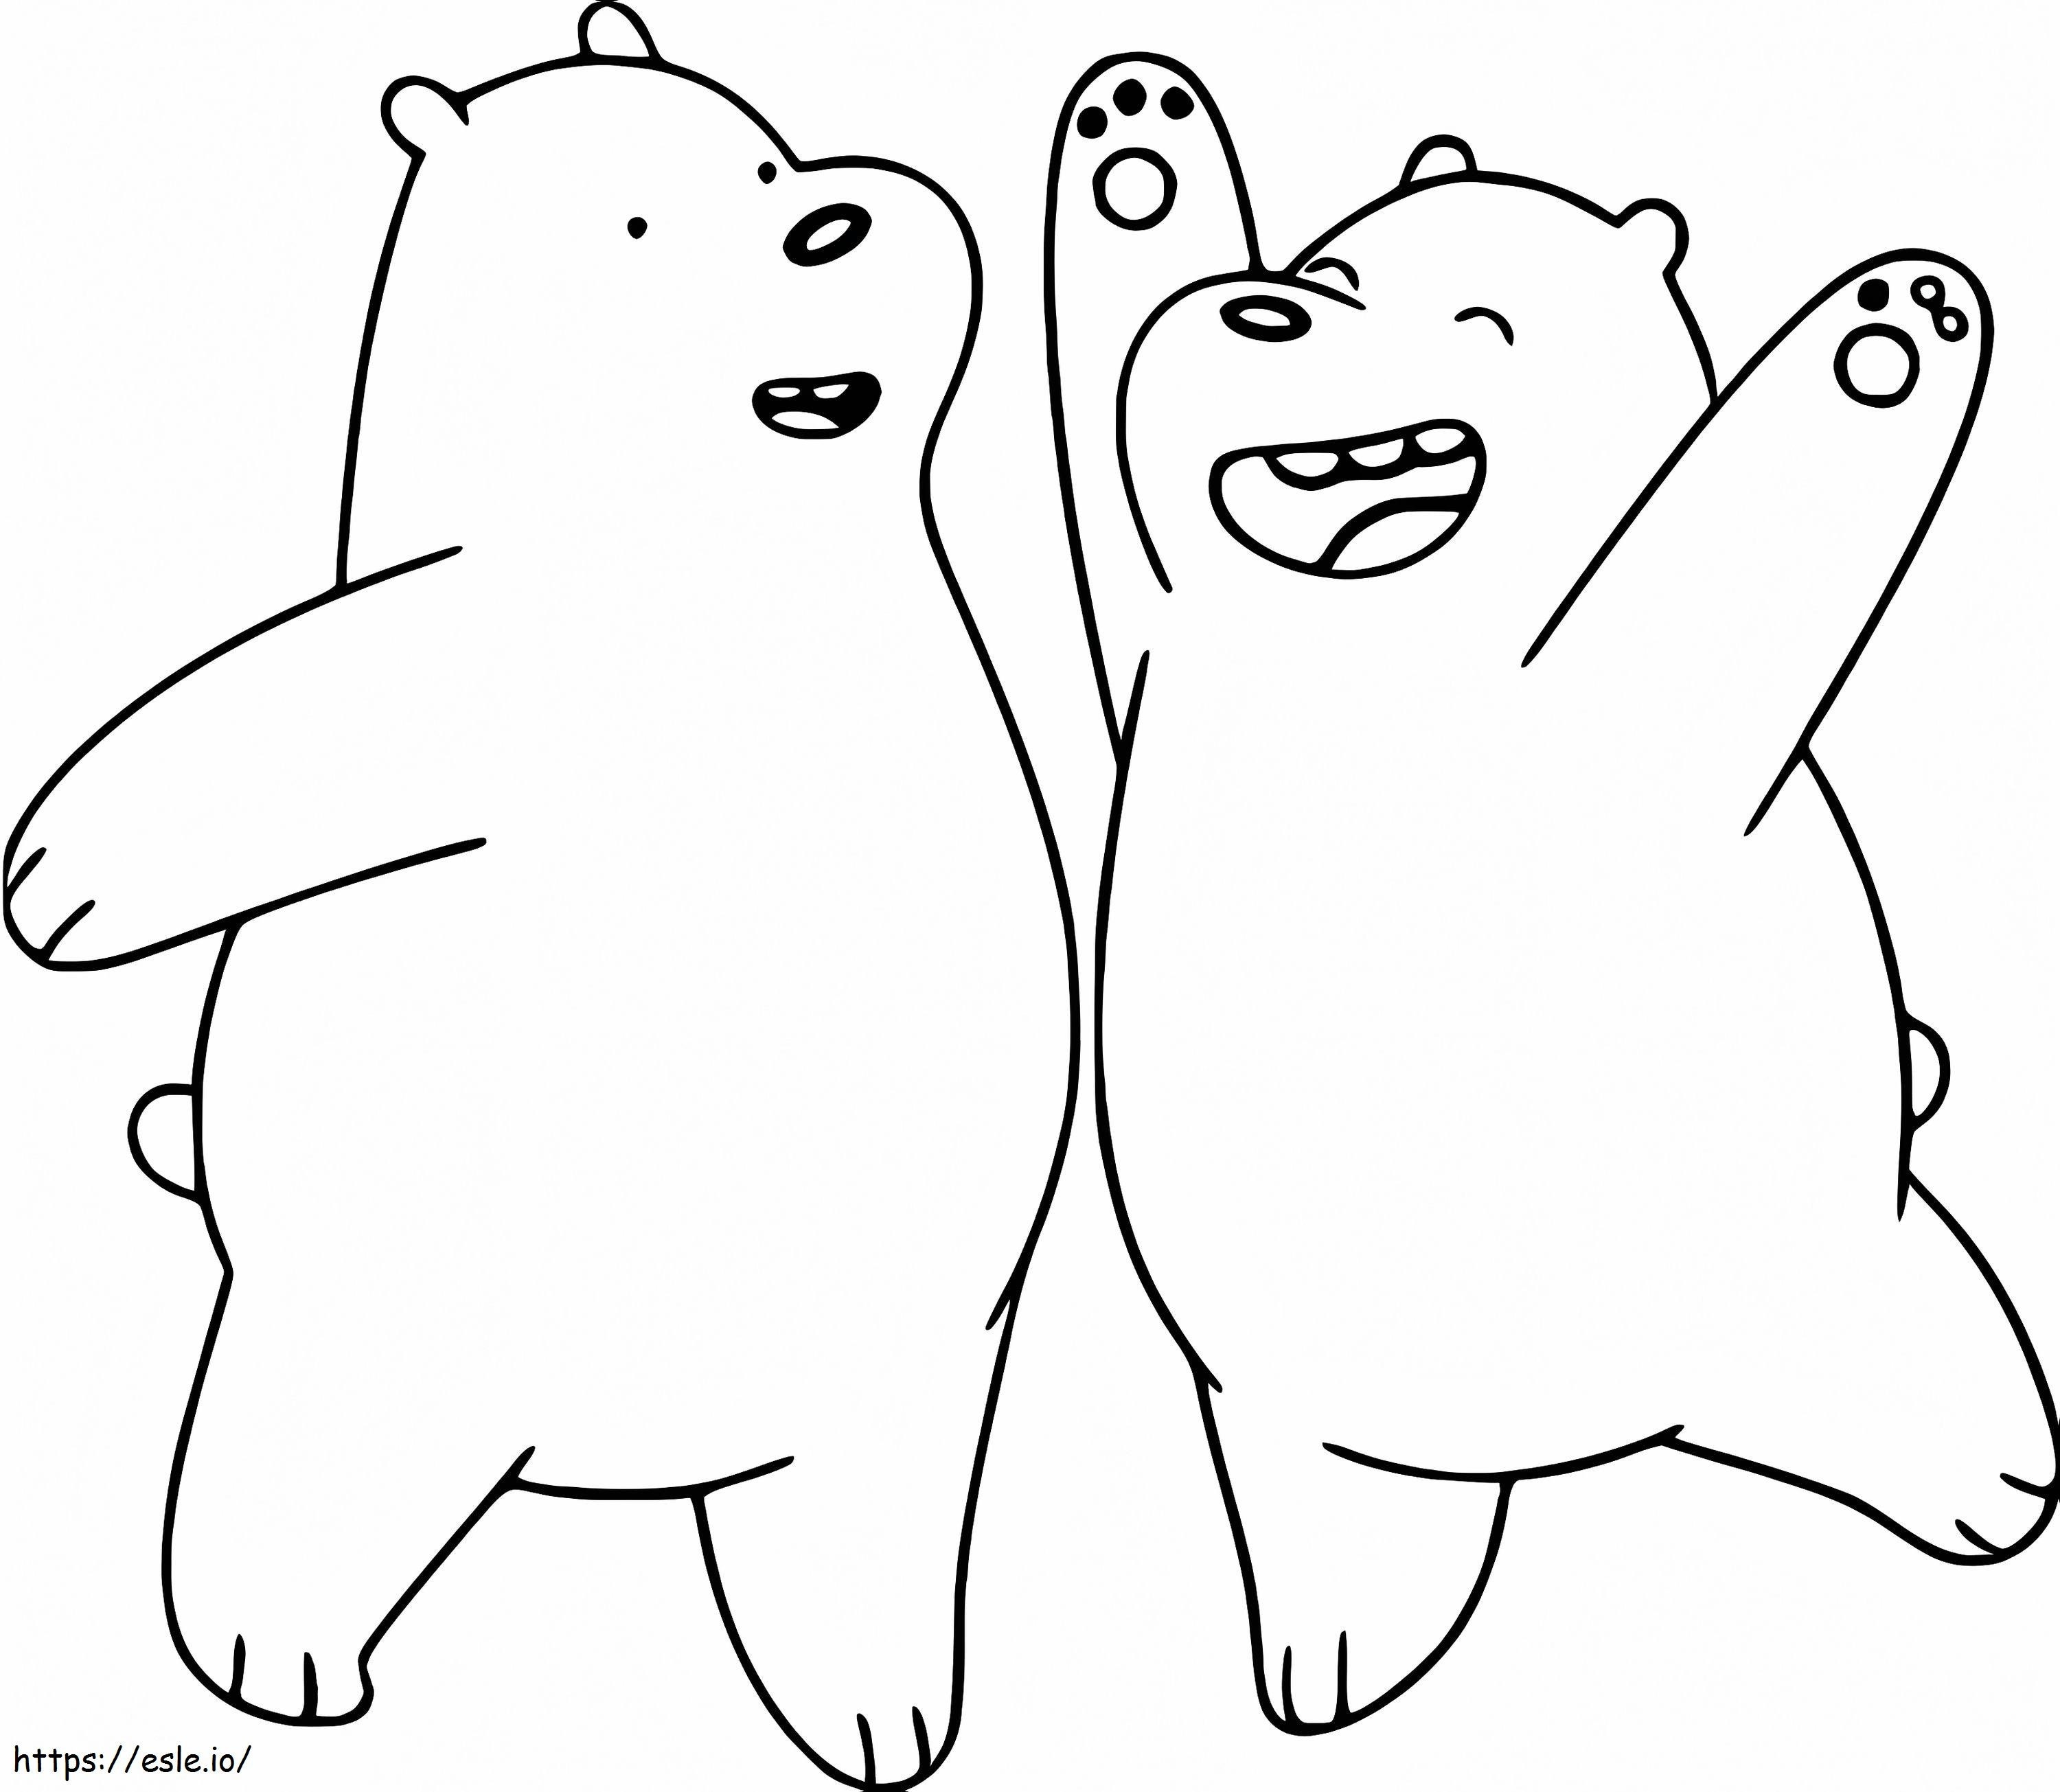 Doi ursuleți de gheață amuzanți de colorat